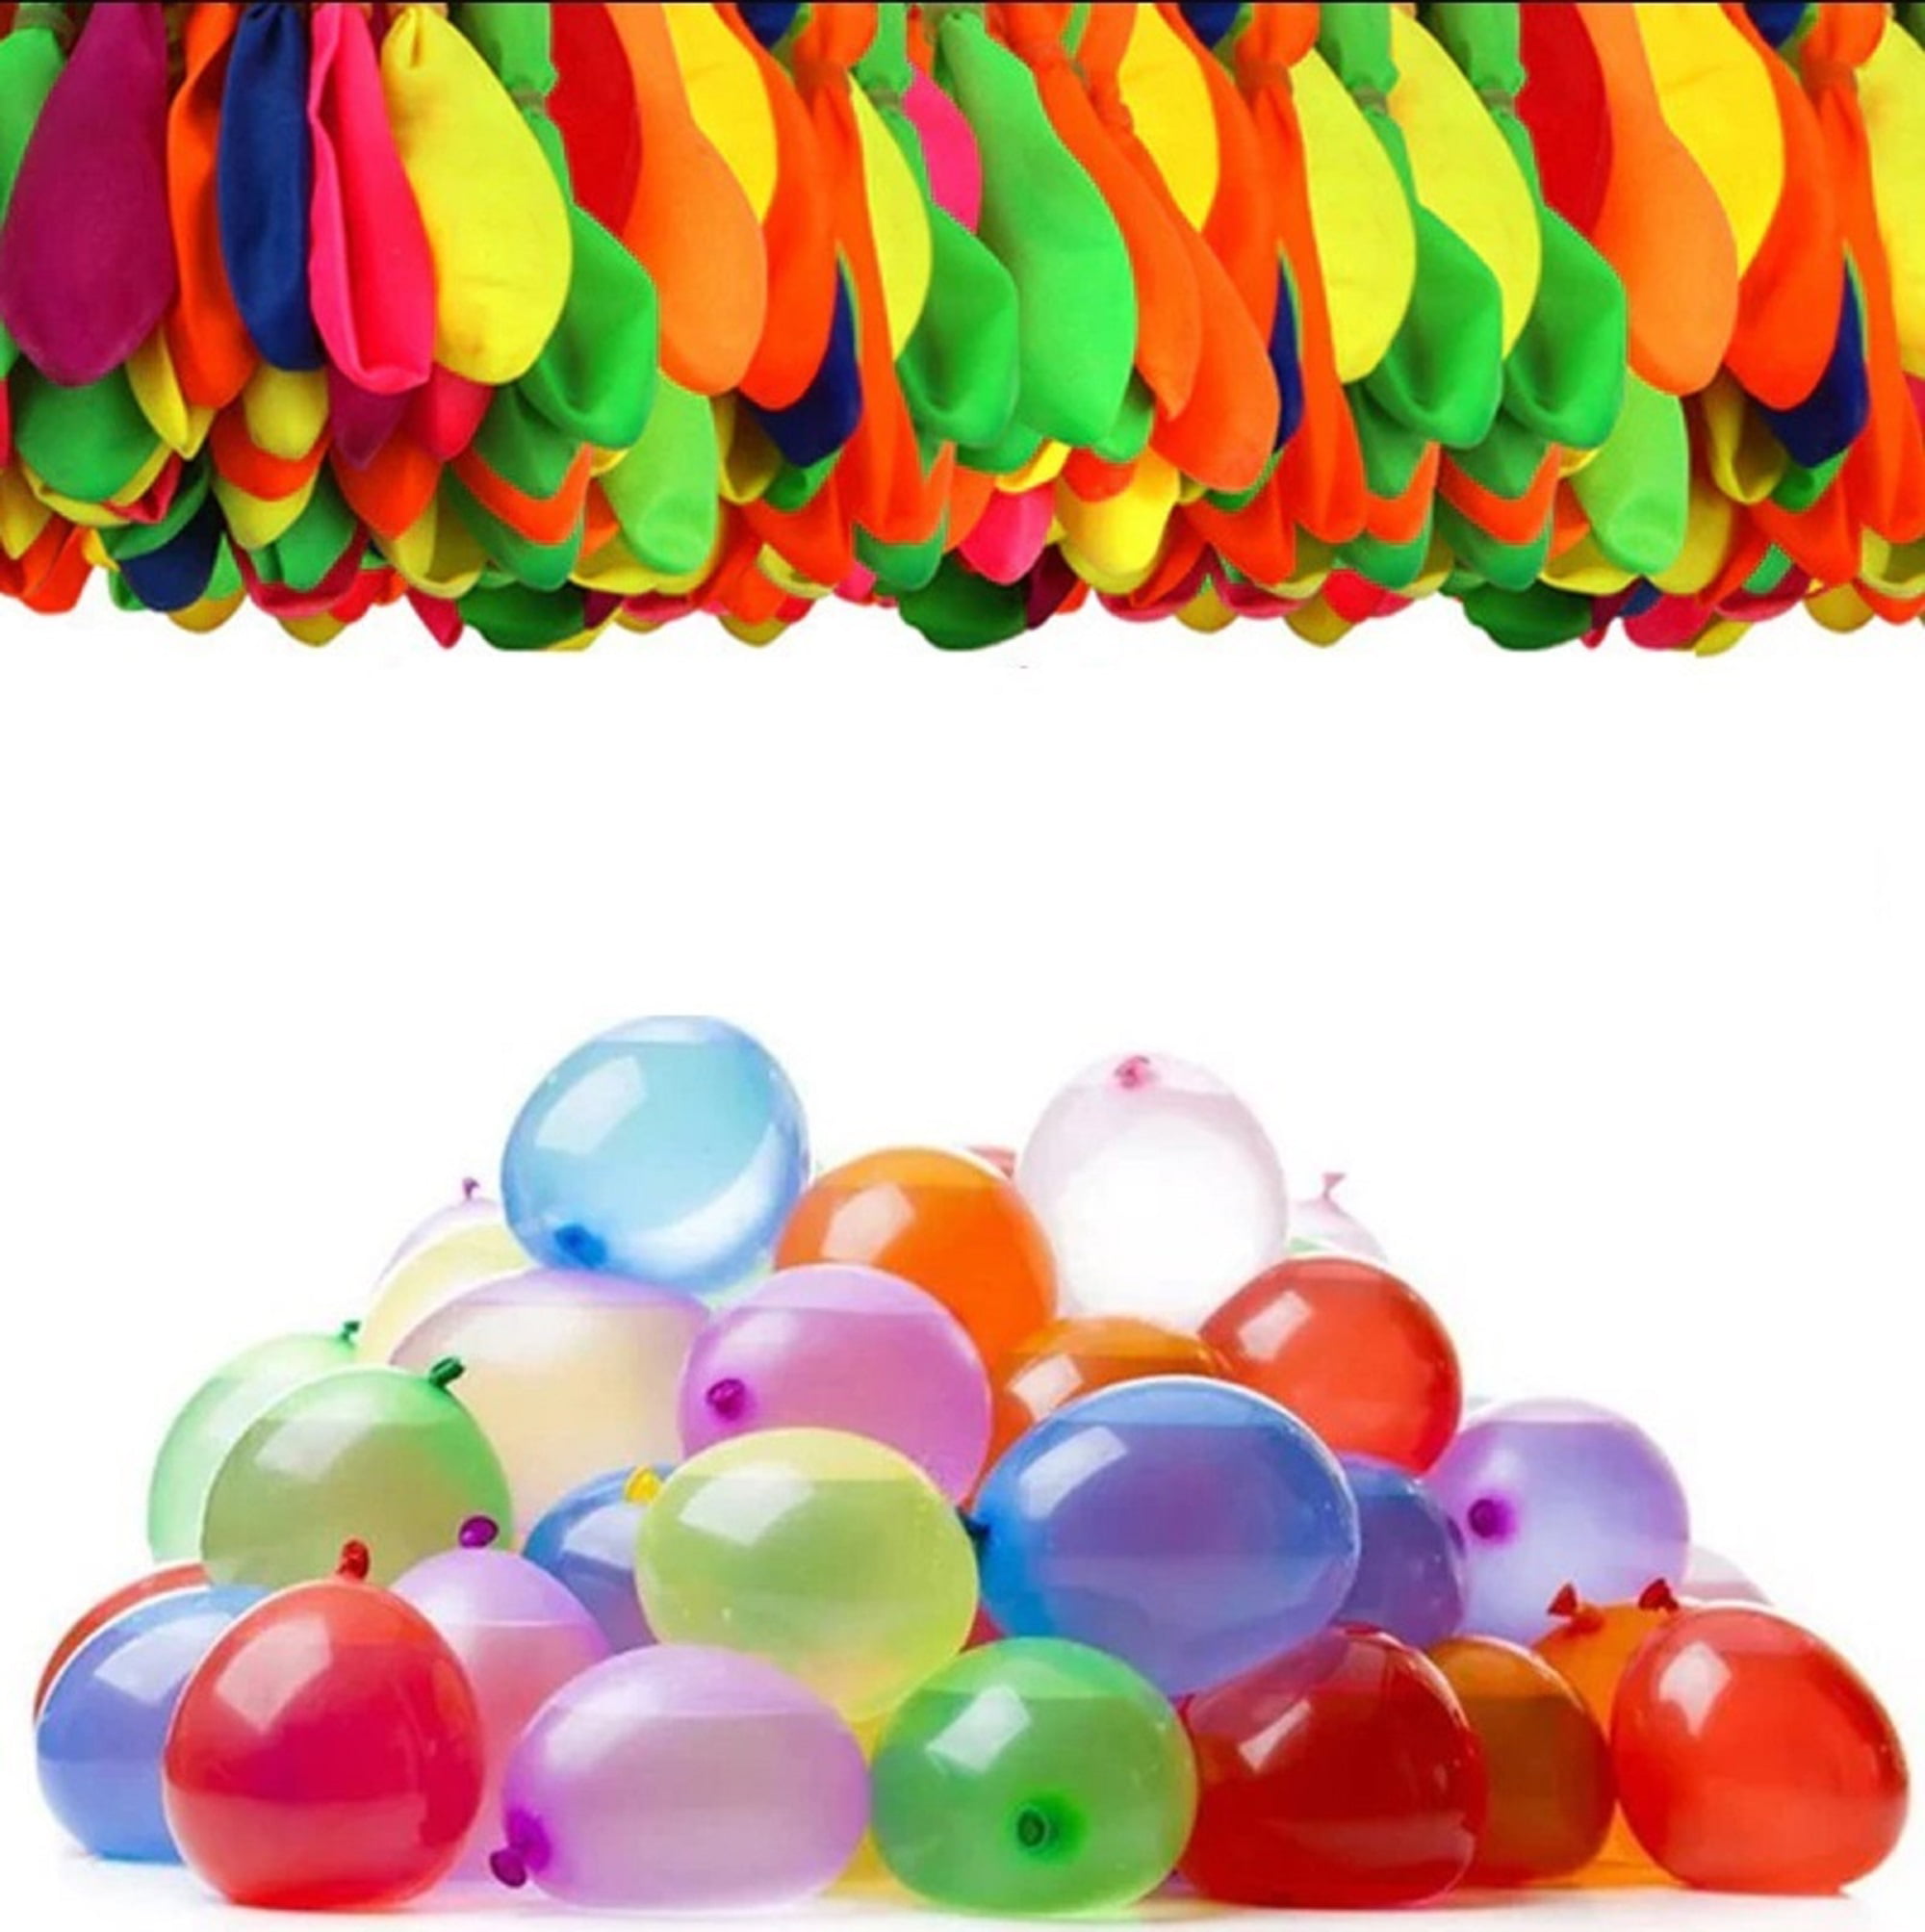 Water Wubble Waterballoon Balls Easy-Fill As Seen On TV! Refillable Reusable 